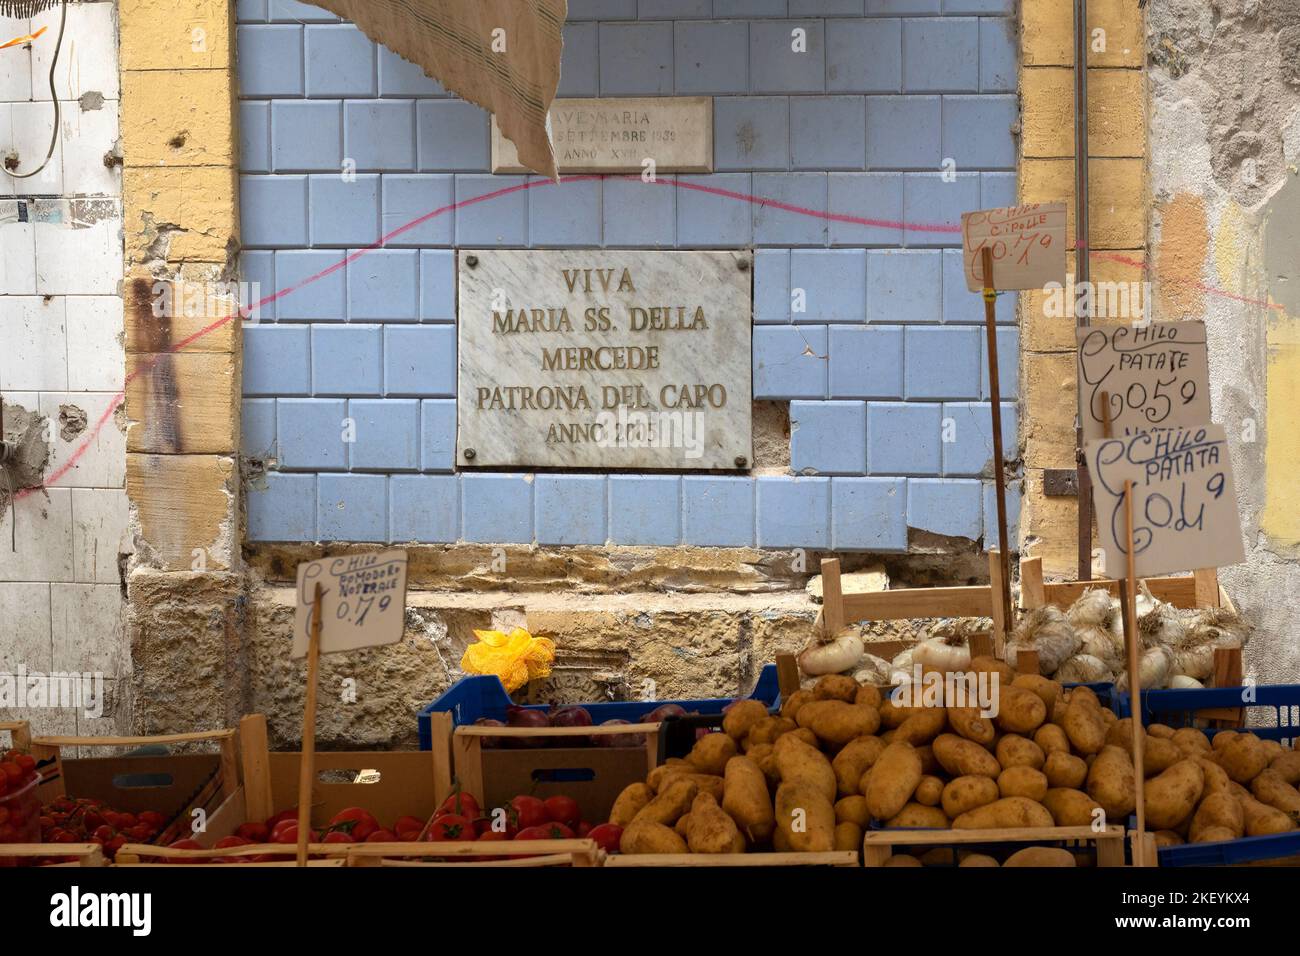 PALERME, SICILE, ITALIE - 21 MAI 2018 : petit stand de légumes au marché de la Vucciria avec plaque honorant Marie notre-Dame de la Miséricorde (Maria della Mercede) Banque D'Images